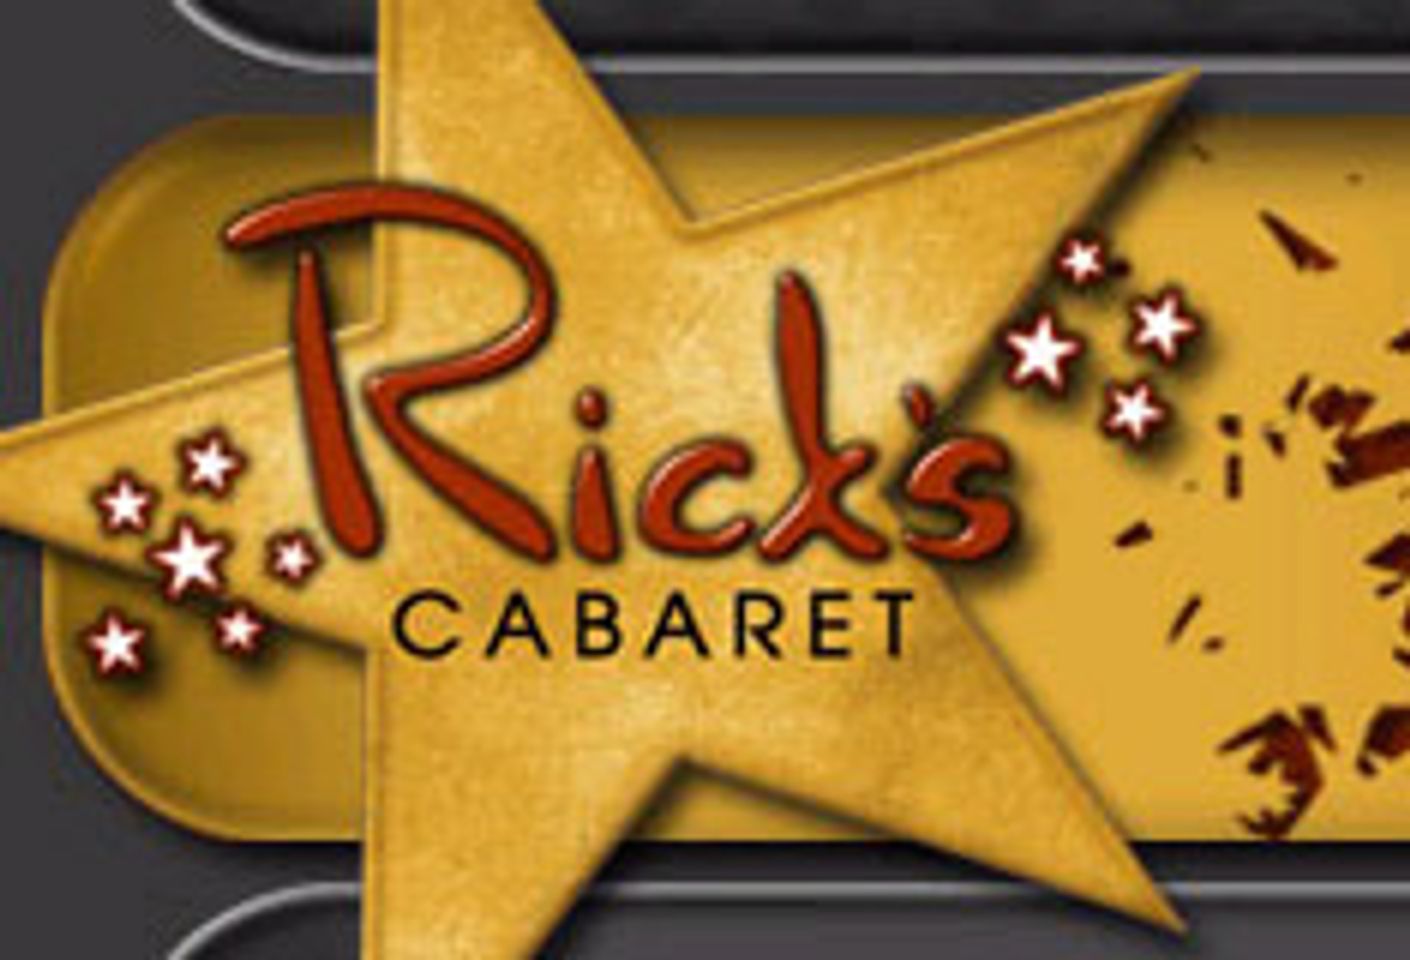 Rick&#8217;s Cabaret Reports Record Revenue